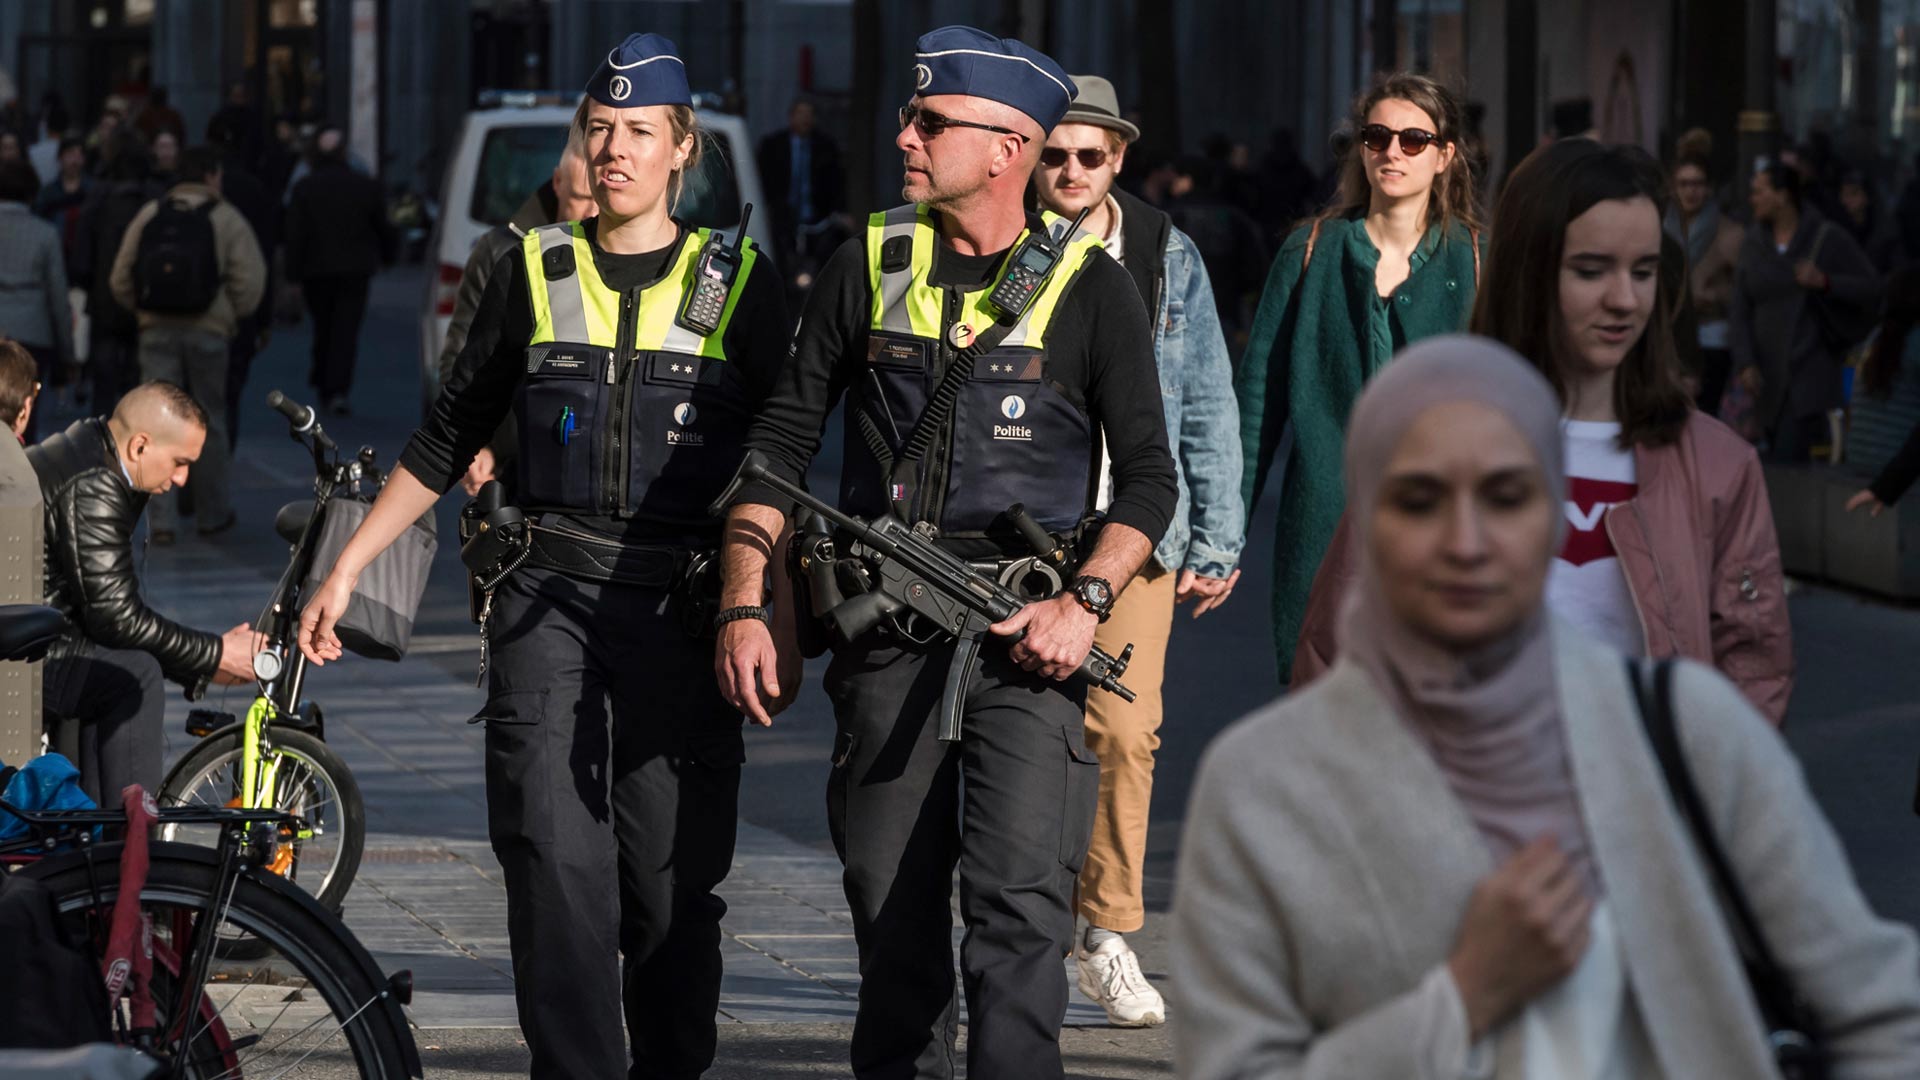 La Policía Federal belga quiere contratar a agentes con antecedentes penales